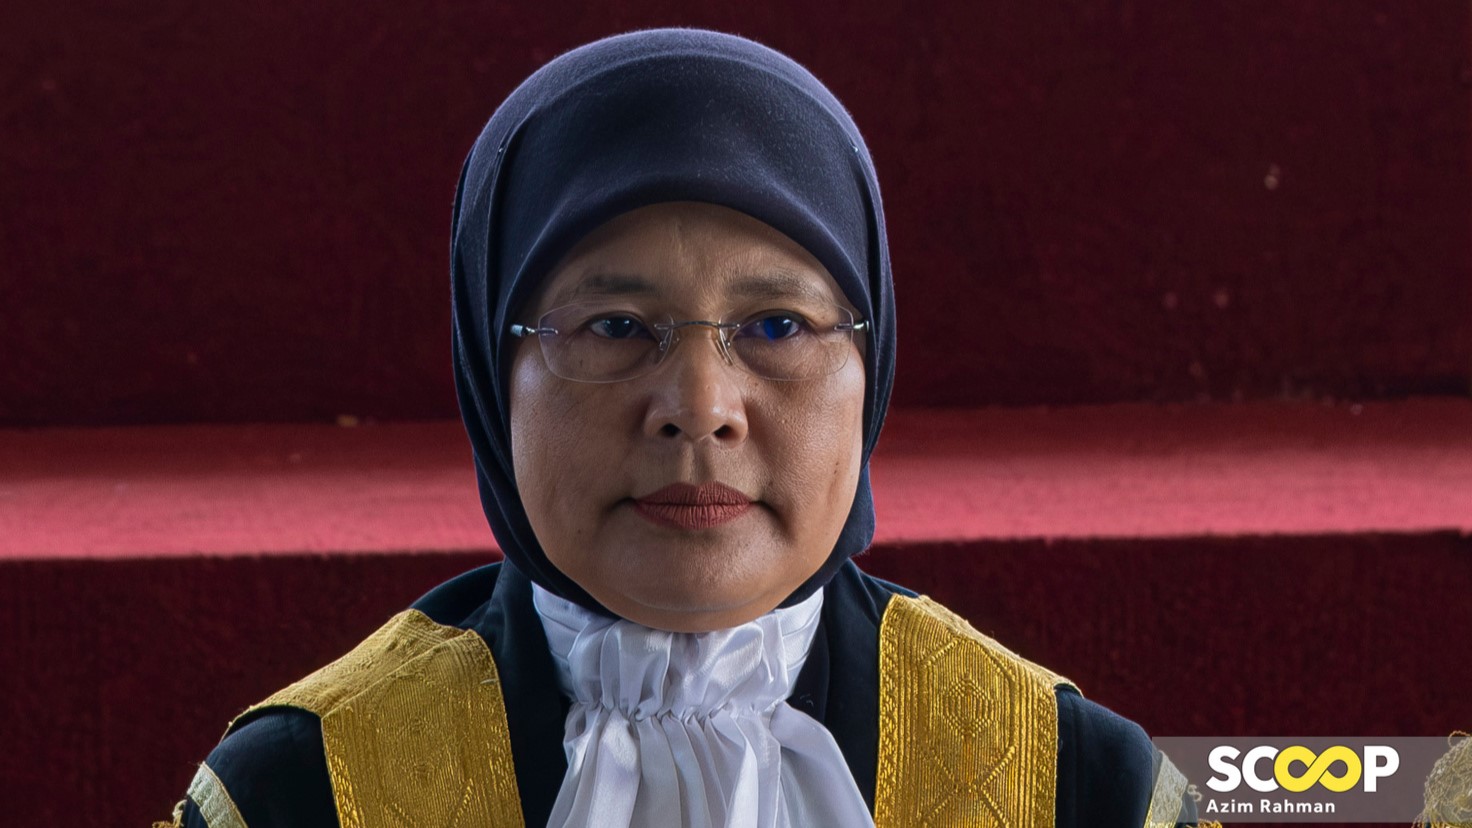 Mahkamah Syariah, undang-undang Islam tidak akan terkubur - Ketua Hakim Negara